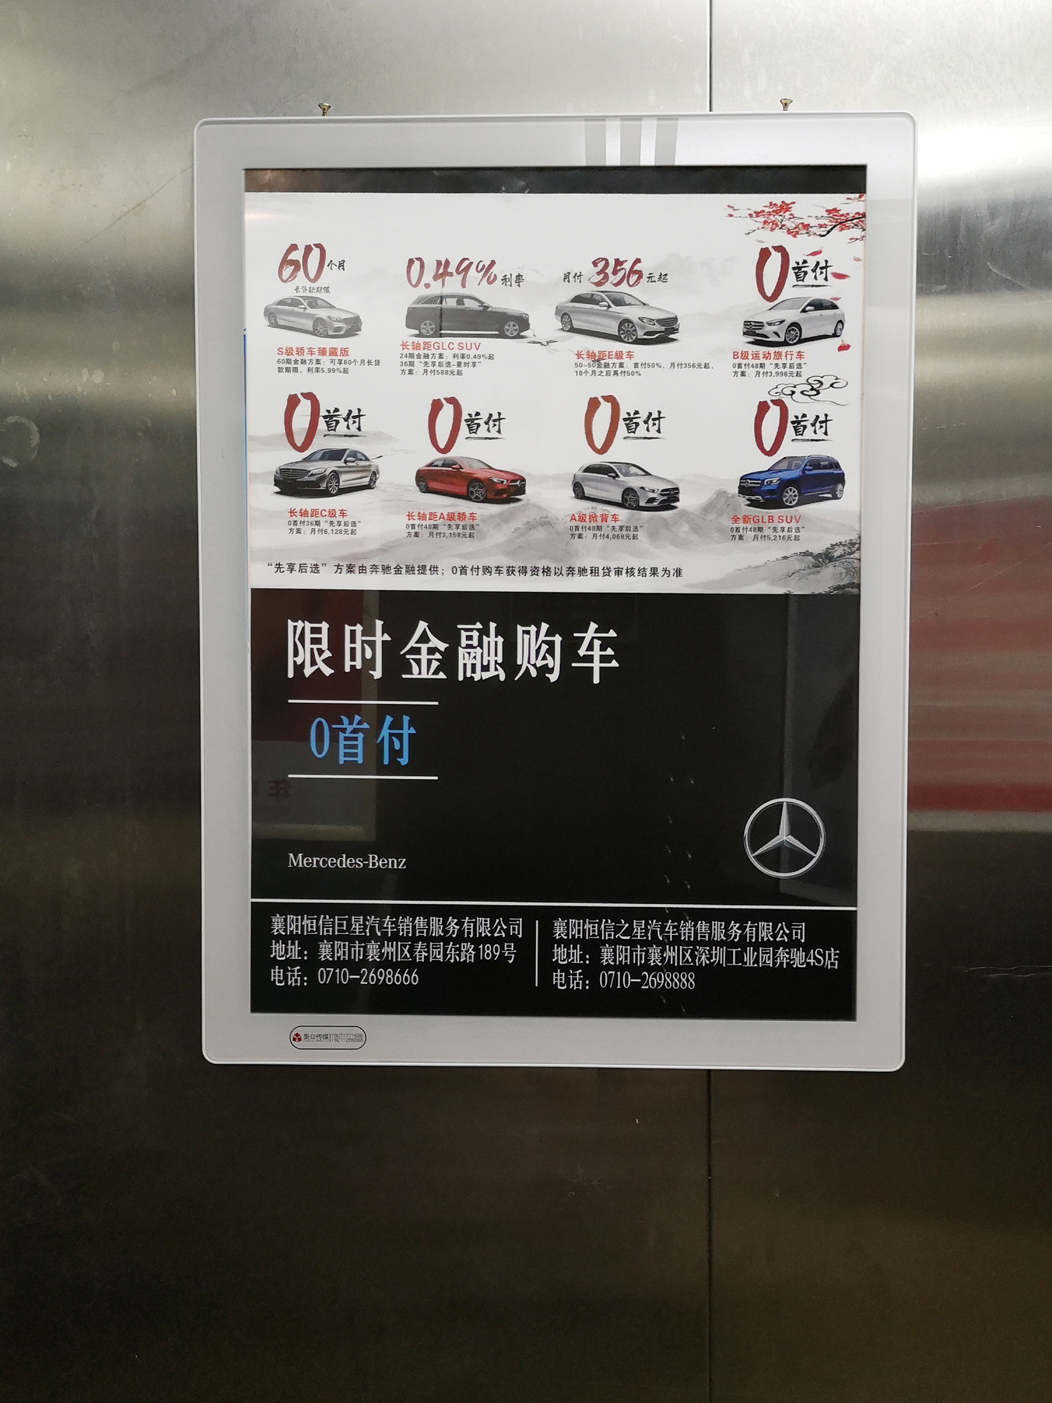  襄阳电梯广告应避免噪音低俗广告